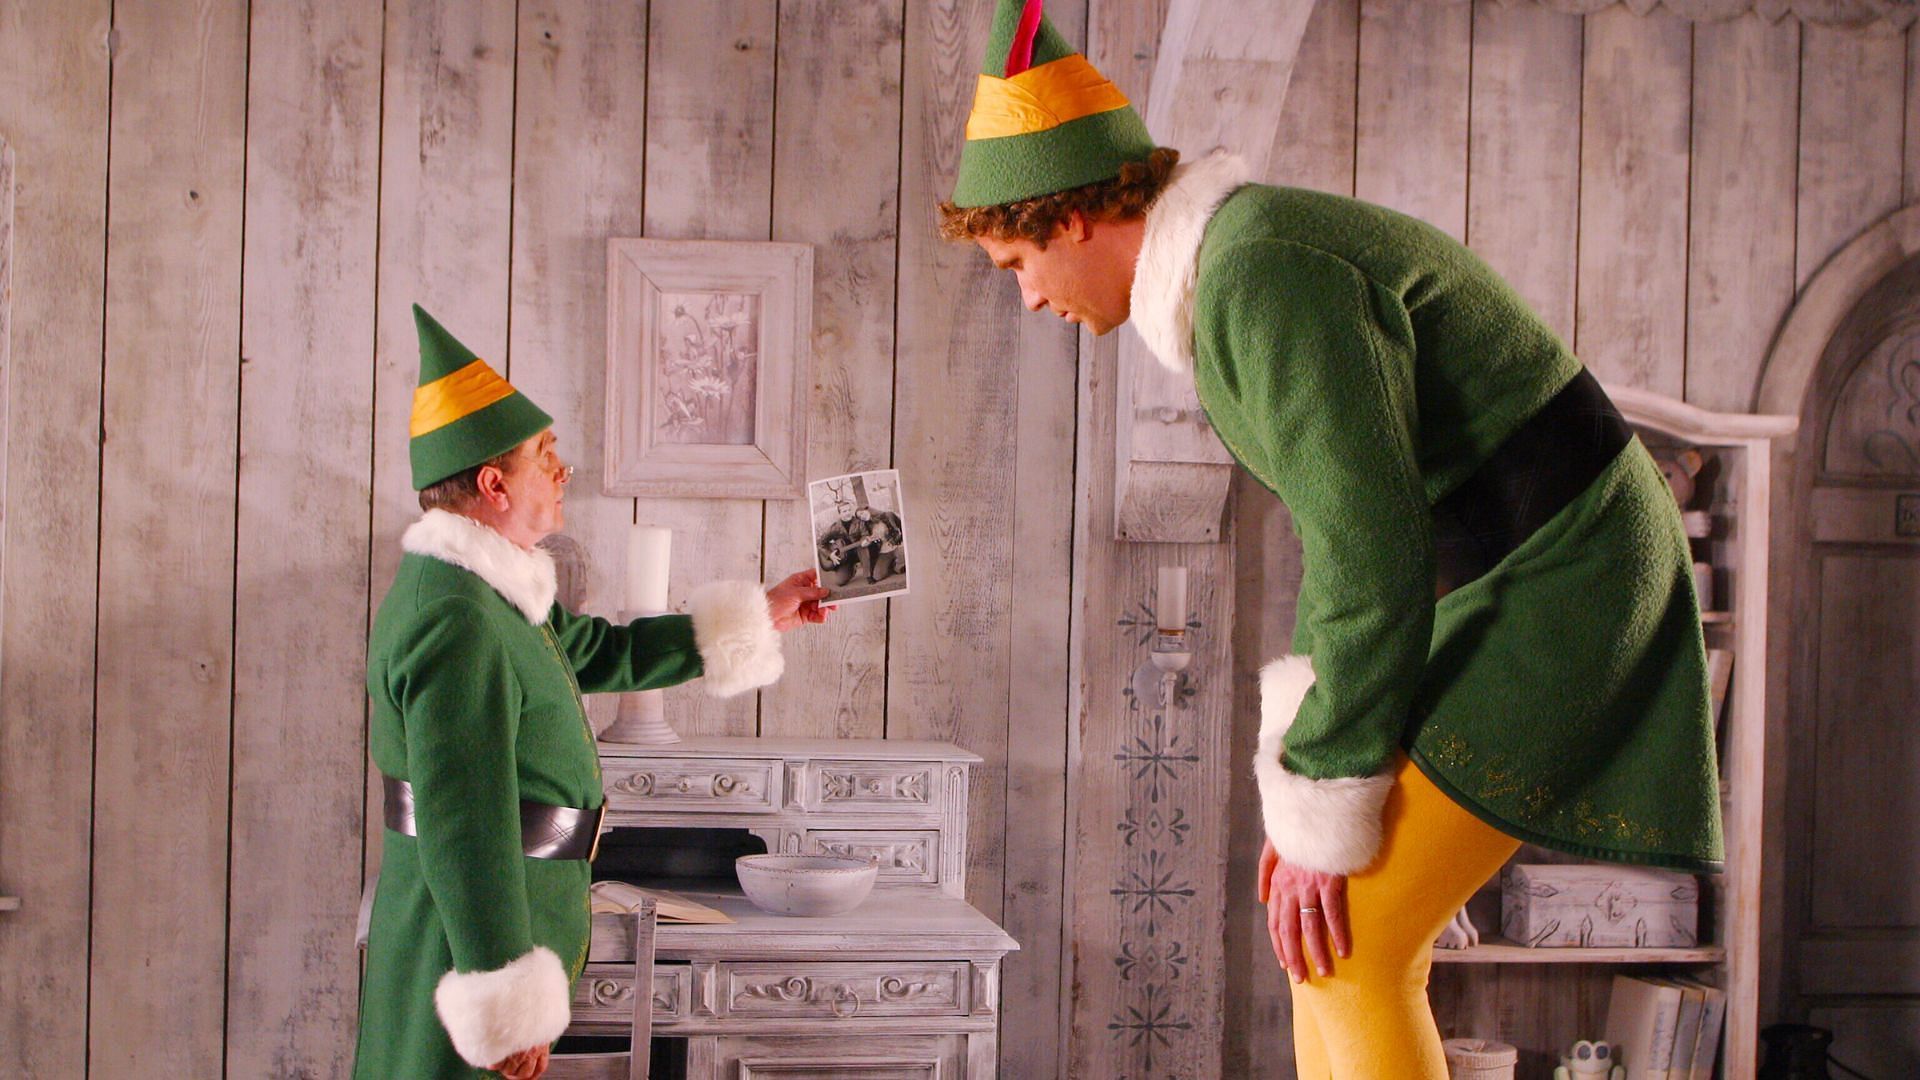 Elf released in 2003 (Image via Warner Brothers)